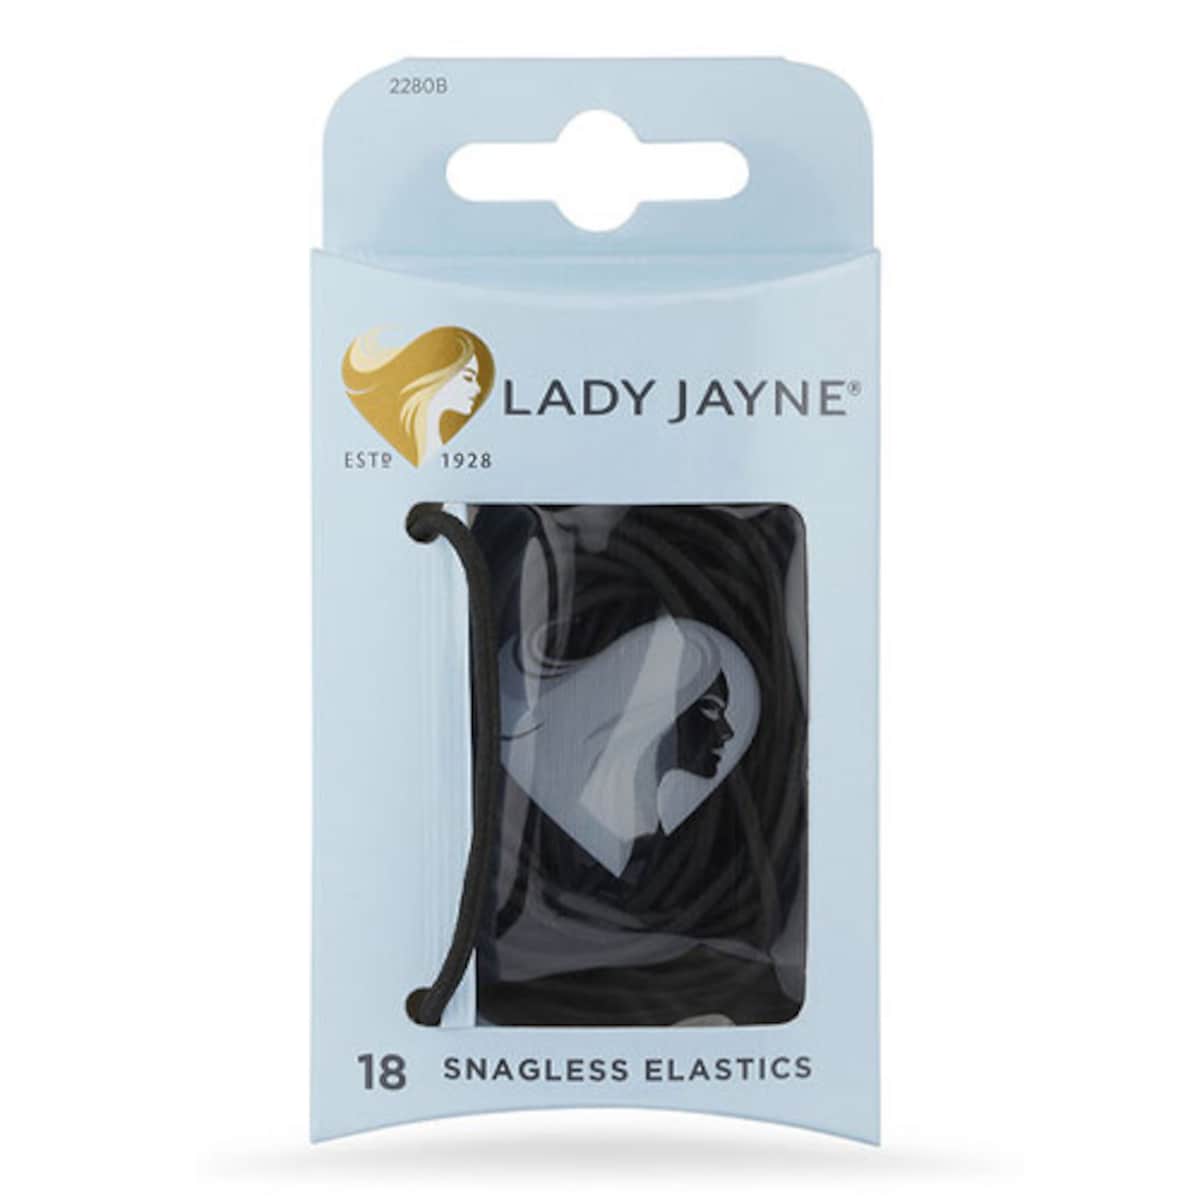 Lady Jayne Snagless Elastics Black 18 Pack